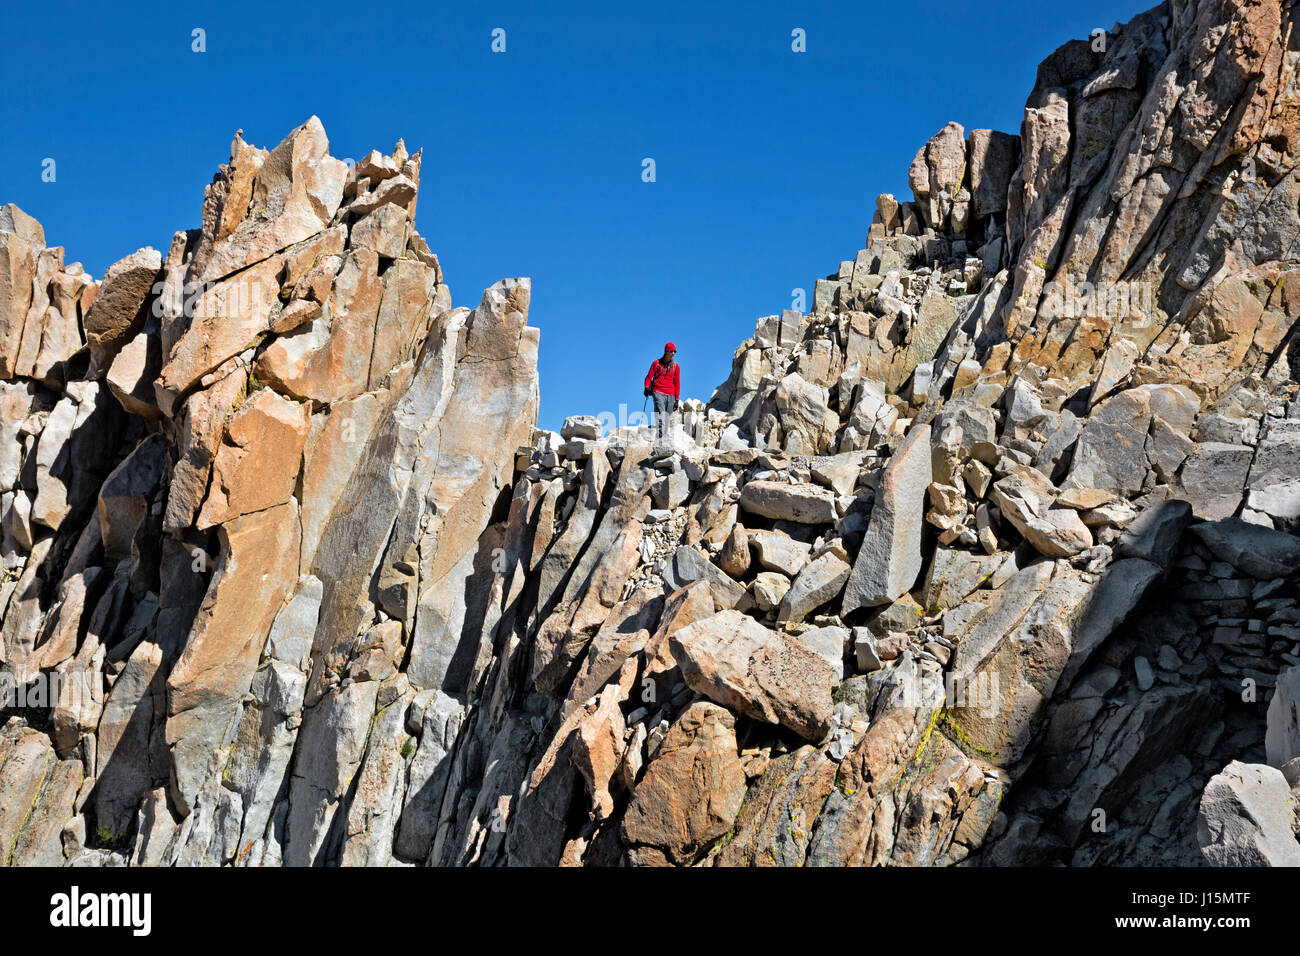 CA03239-00...CALIFORNIA - Caminante descendiendo el sendero rocoso hacia abajo desde la cima del Monte Whitney. Foto de stock